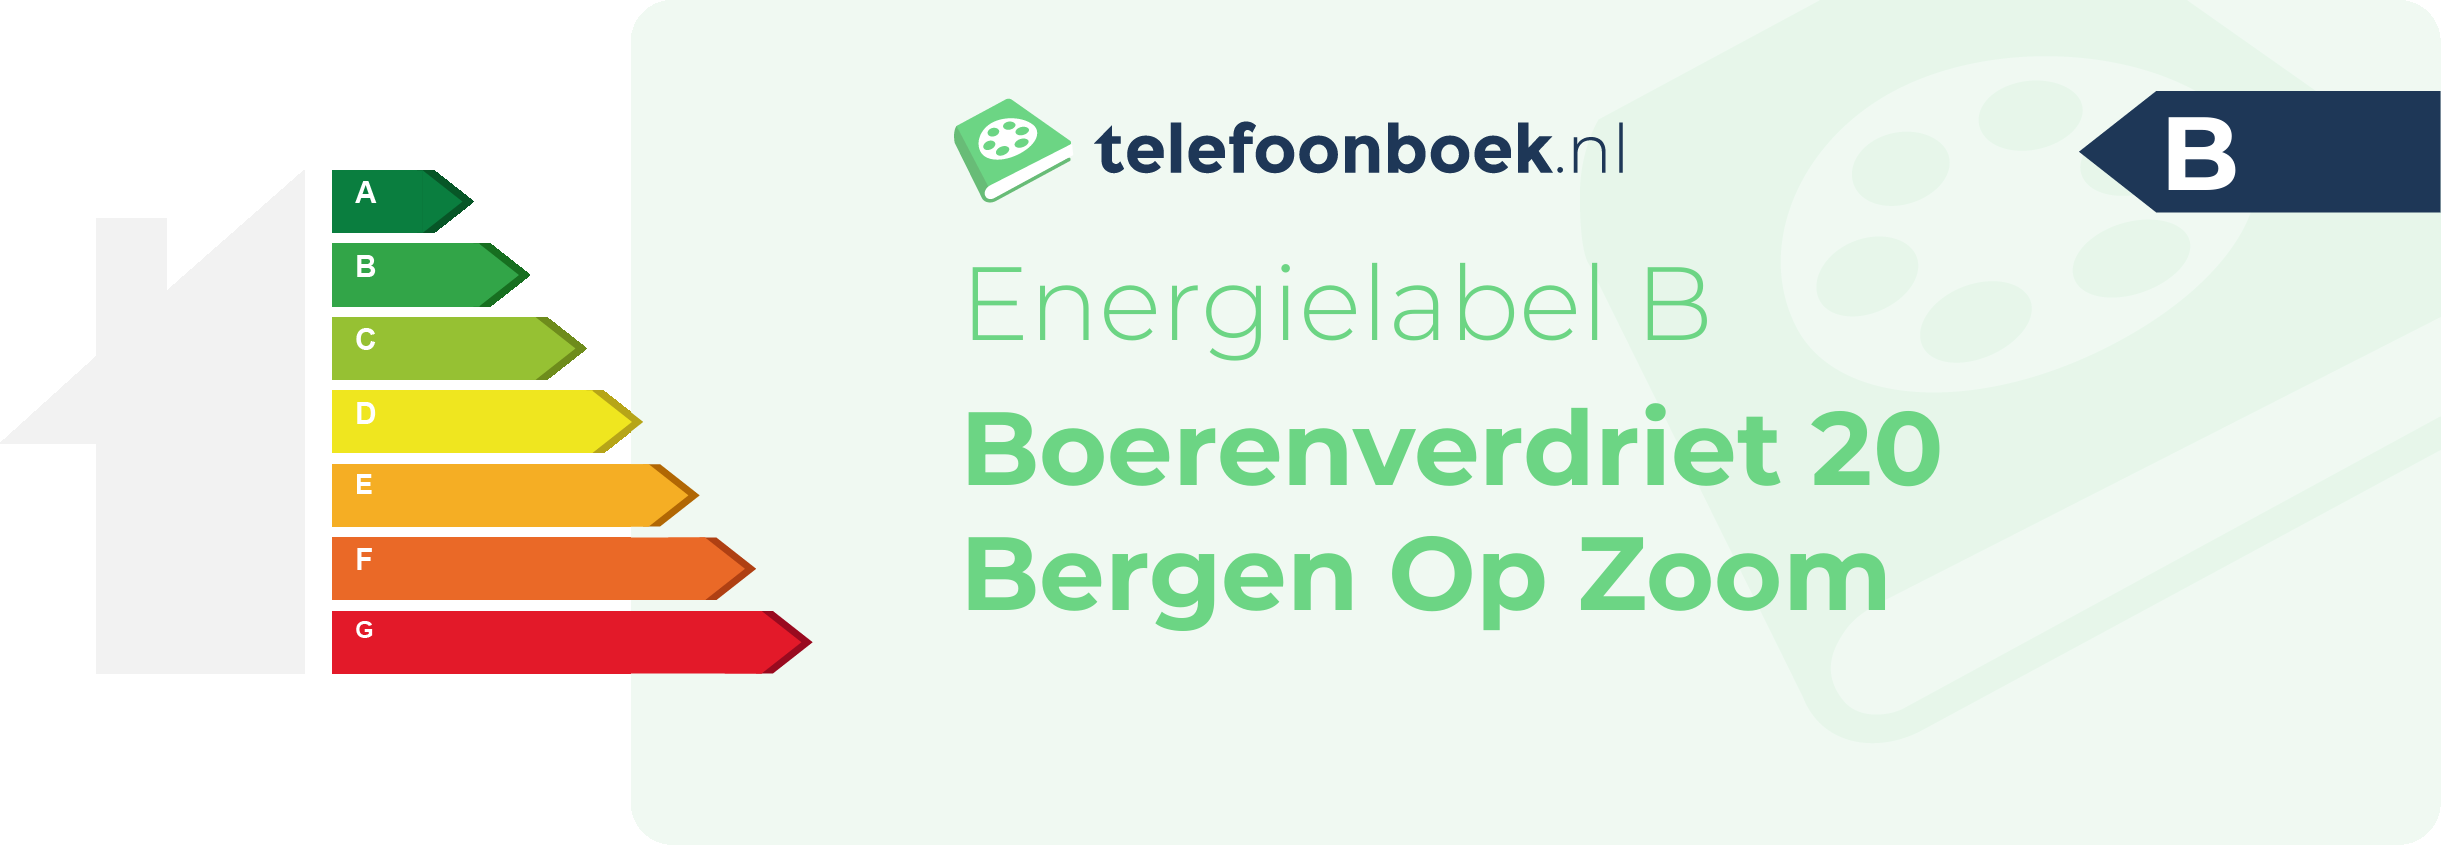 Energielabel Boerenverdriet 20 Bergen Op Zoom